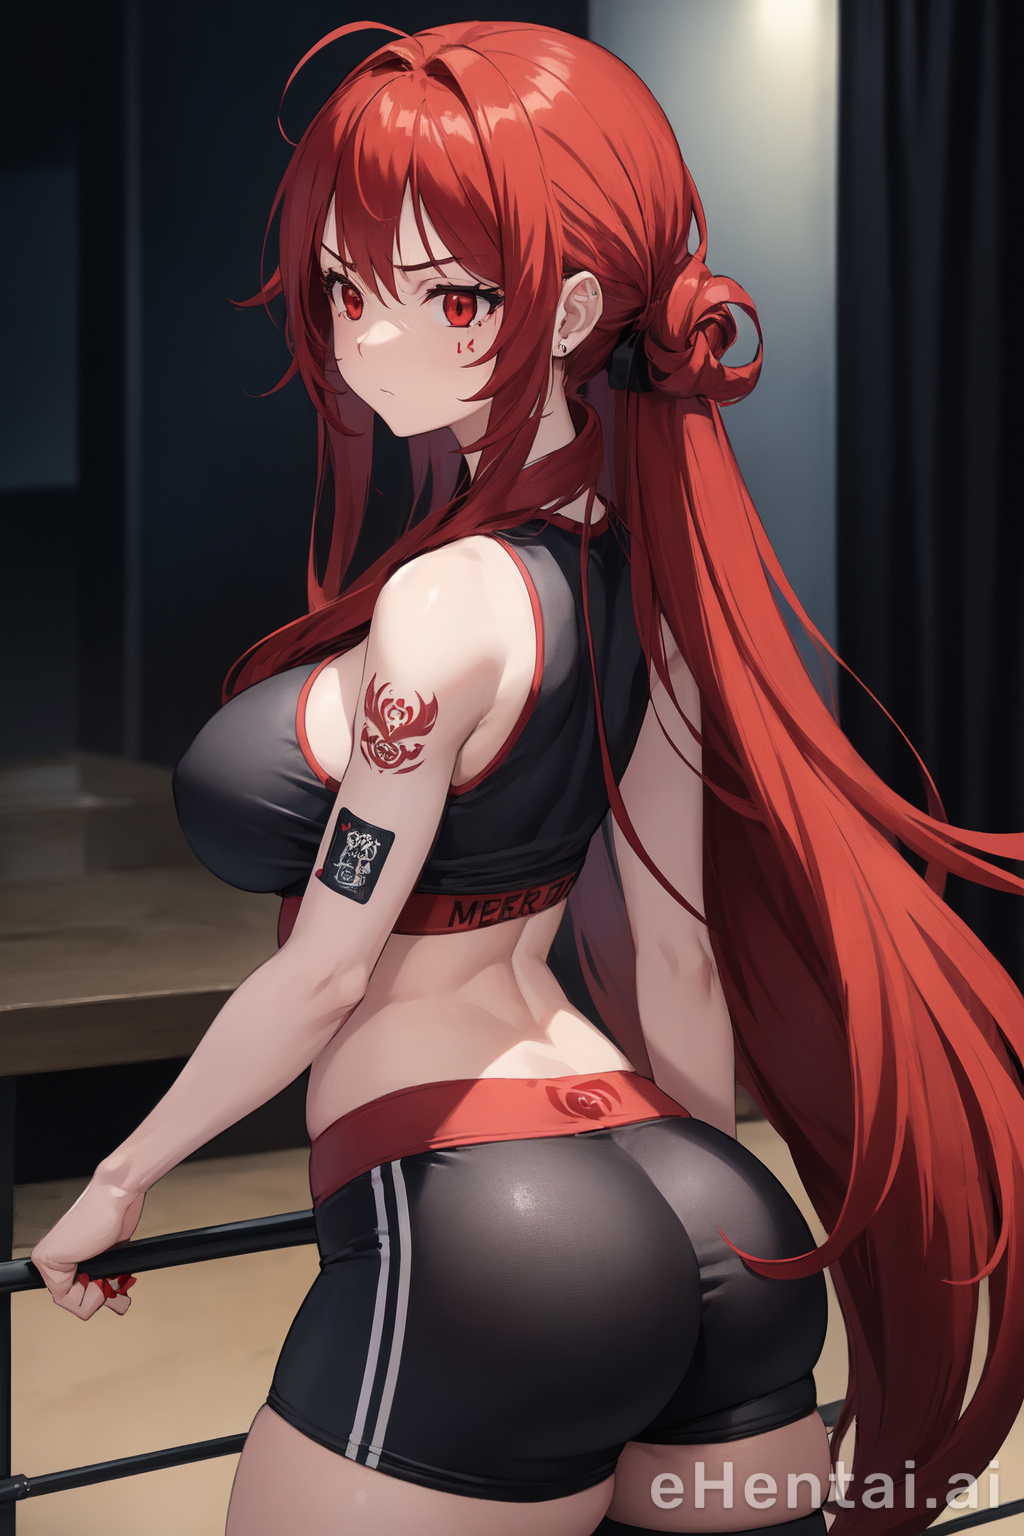 Red Hair Anime Hentai Tits - Meet Mitsuko Saitou - your hentai AI generated girl is here | eHentai.ai